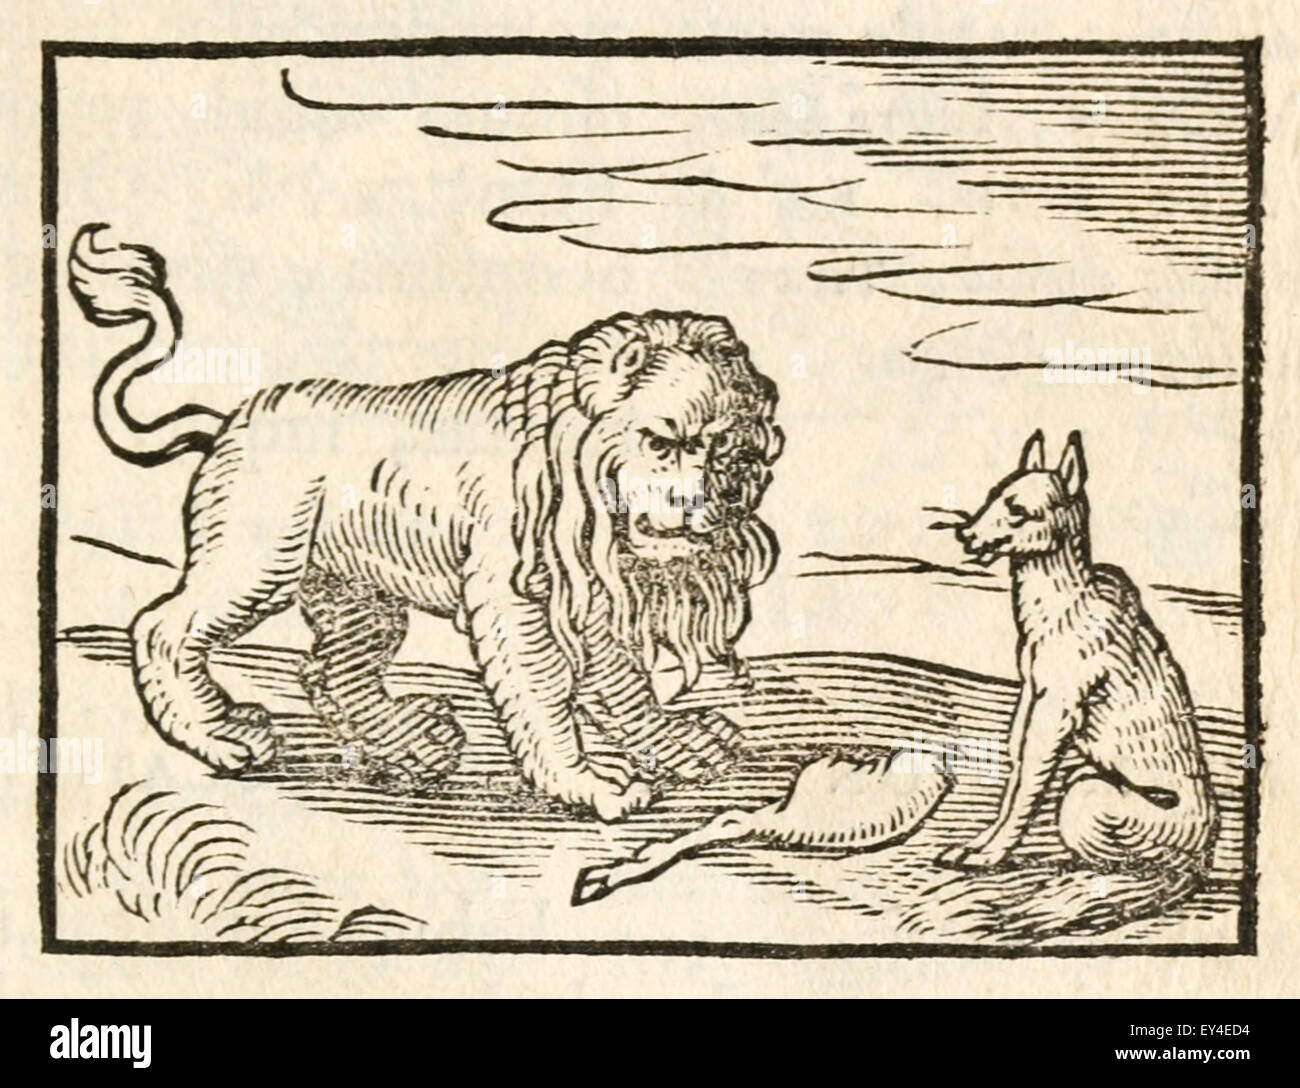 'Le Lion et le renard' fable d'Ésope (vers 600 avant JC). 17e siècle gravure sur bois illustrant les Fables d'Ésope. Voir la description pour plus d'informations. Banque D'Images